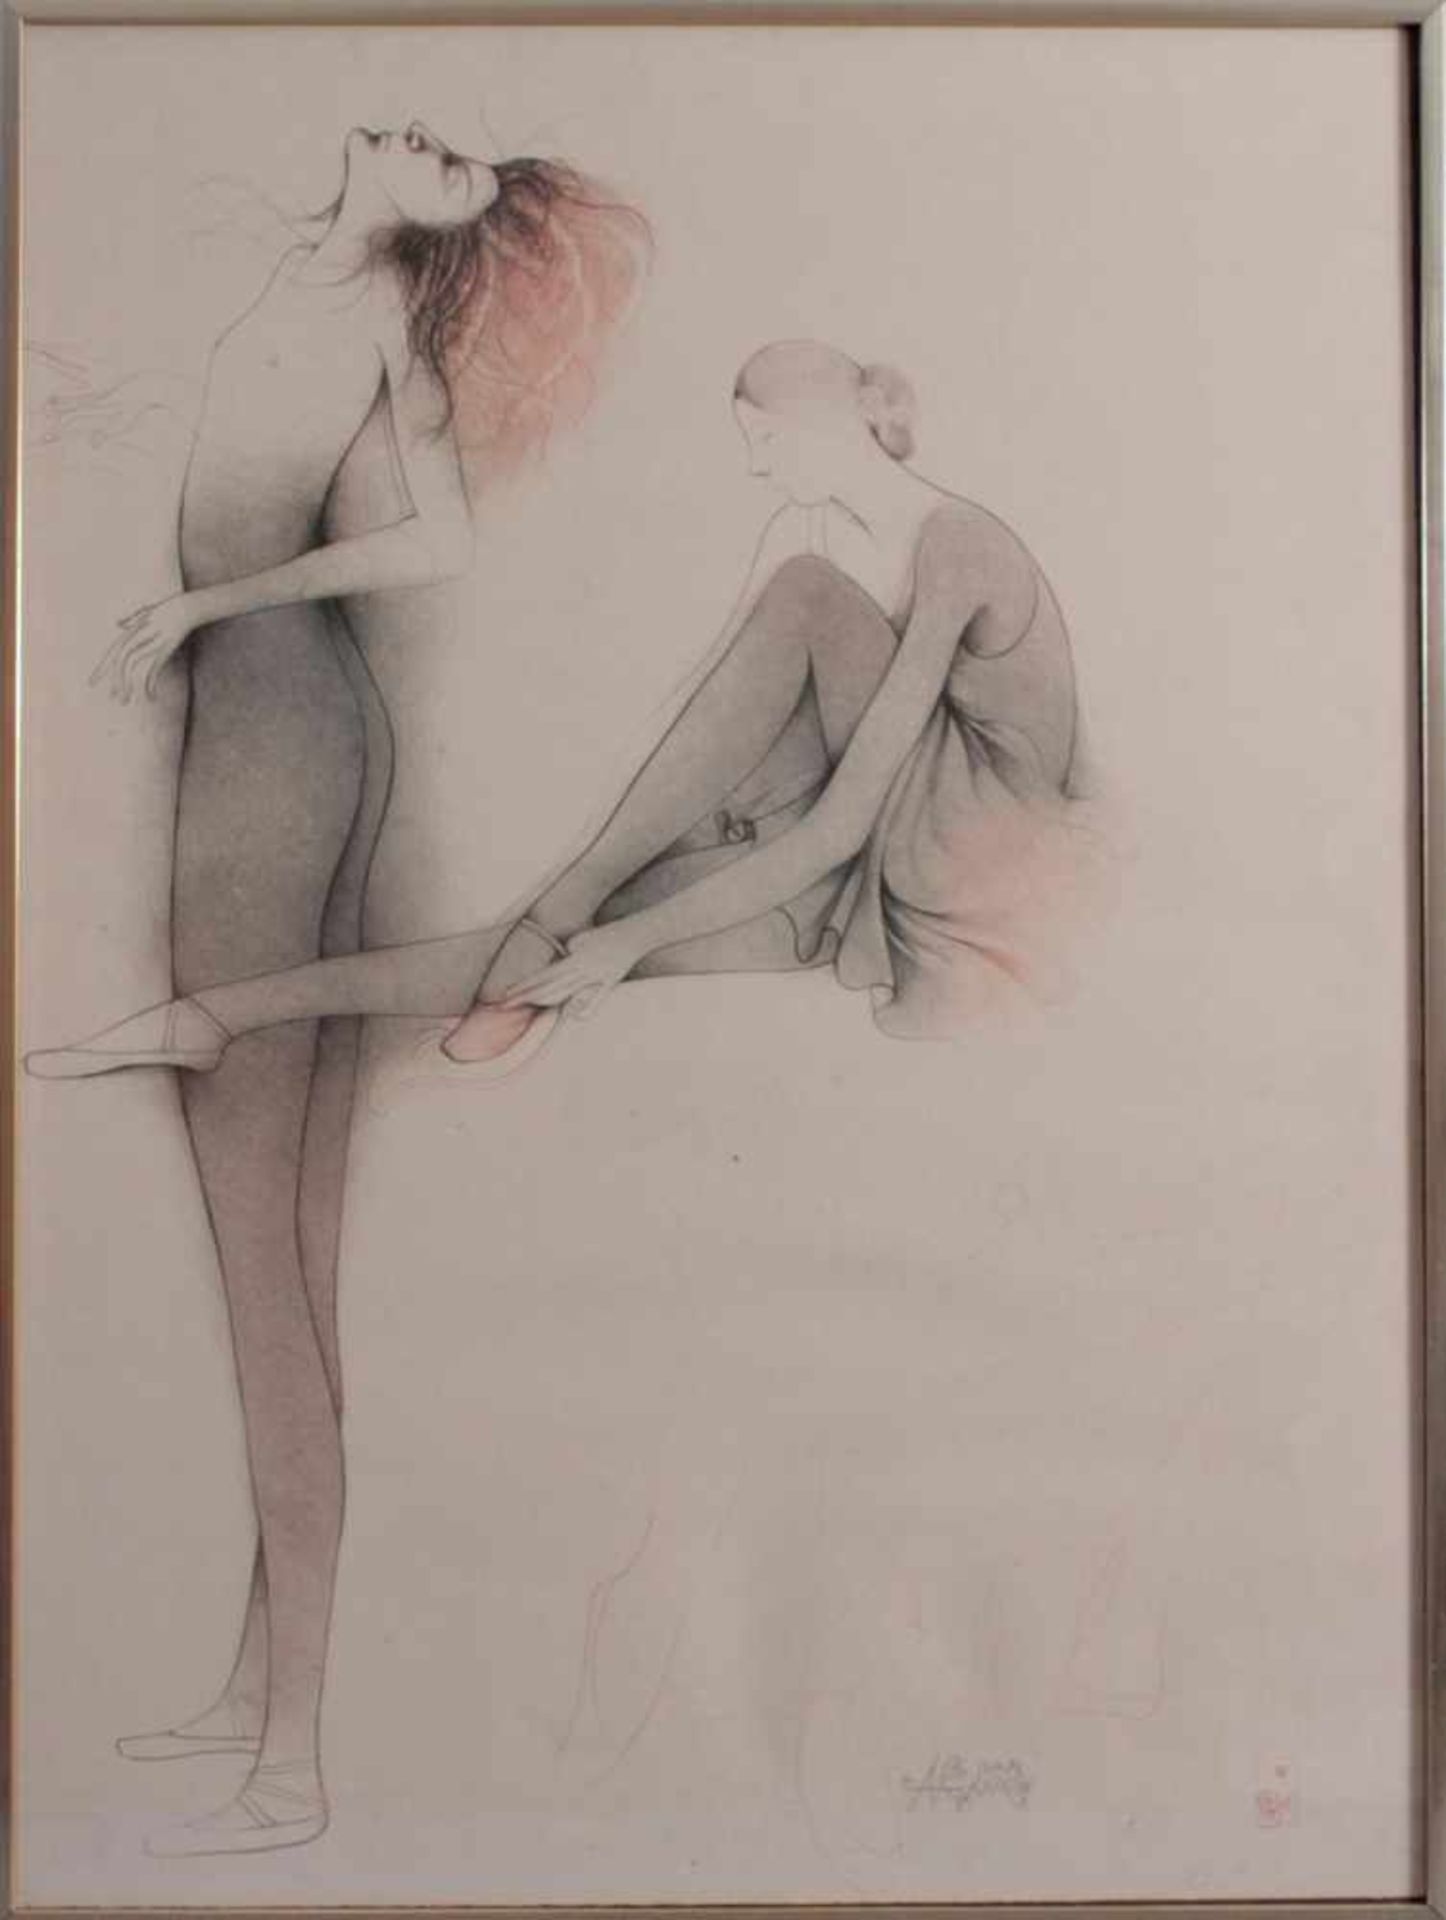 Bruno Bruni (1935)Farblithographie, "Ballerine", handsigniert, nummeriert 175/26, ca. 80 x 60 cm.